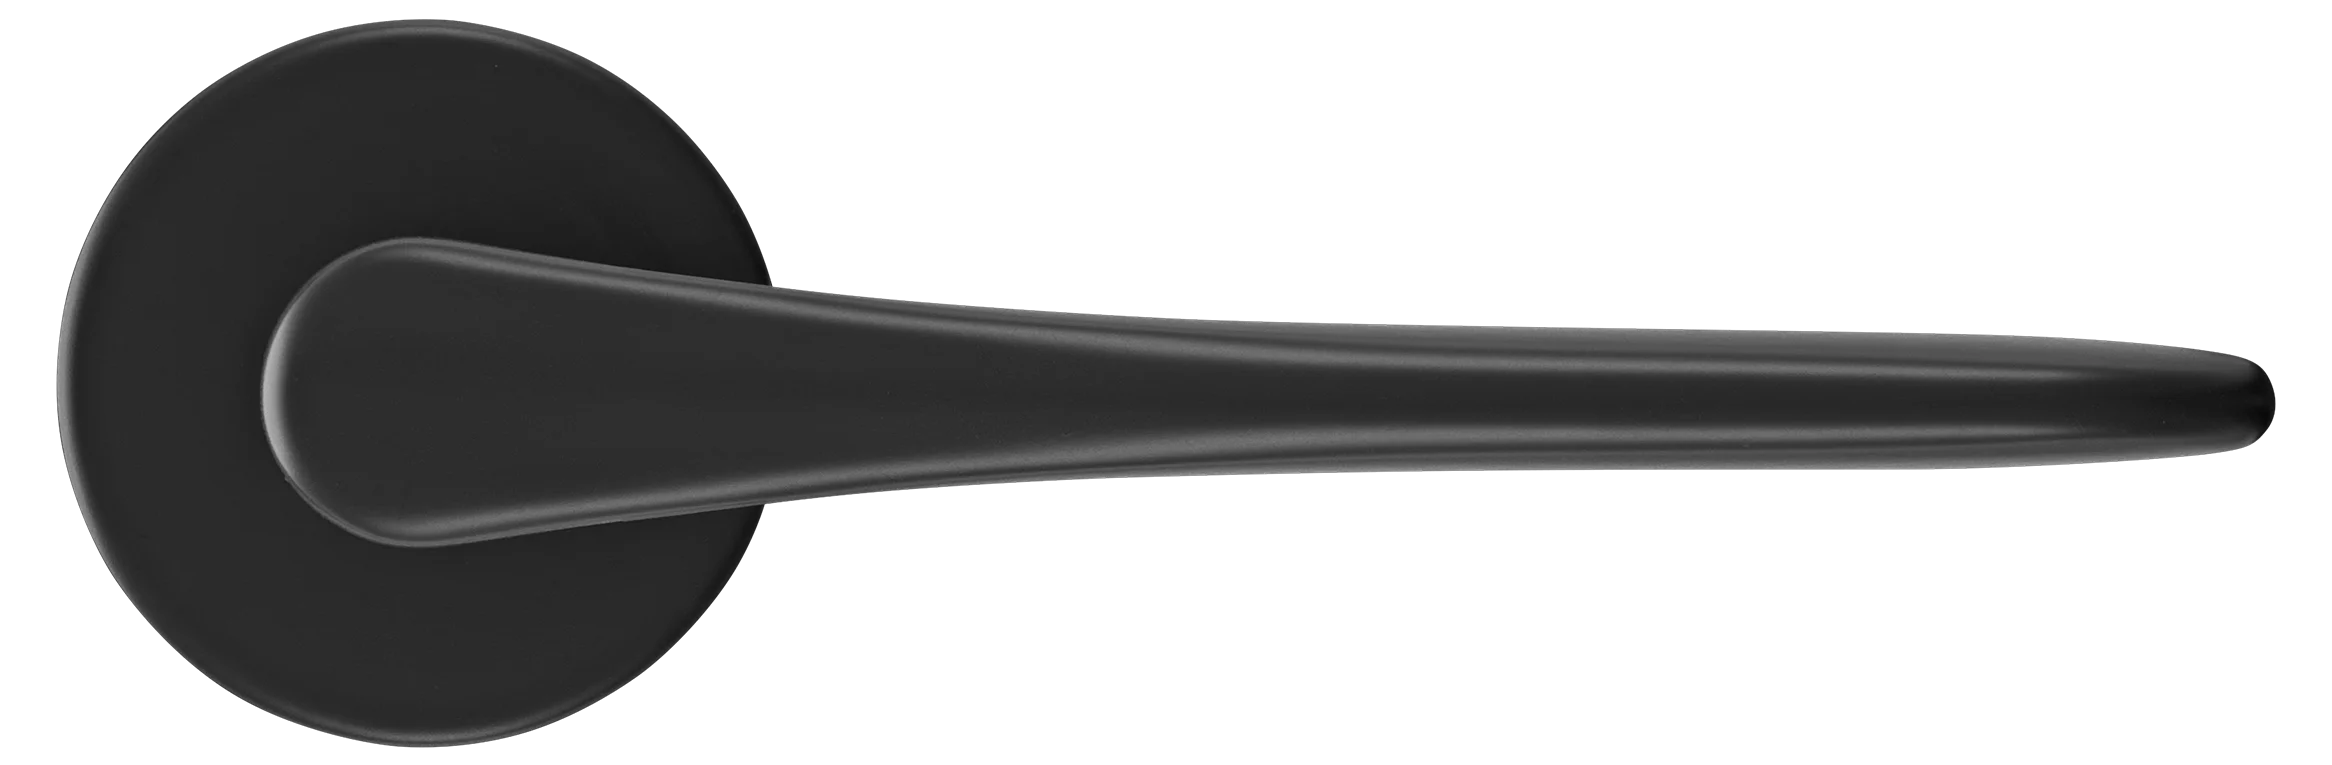 AULA R5 NERO, ручка дверная на розетке 7мм, цвет -  черный фото купить в Уфе